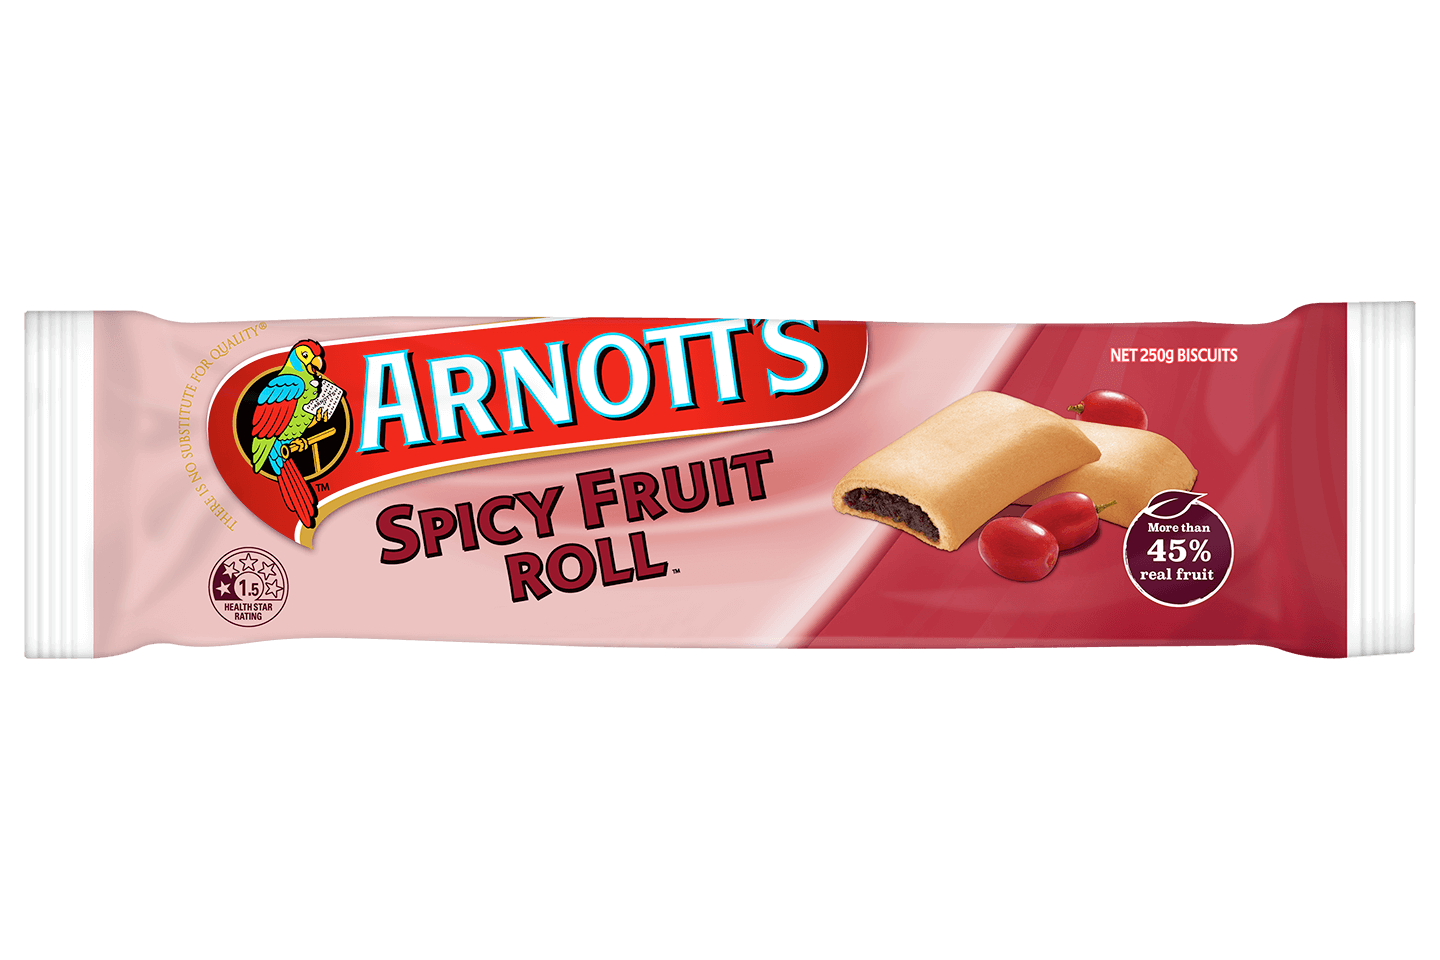 Pack shot for Arnott's Spicy Fruit Roll